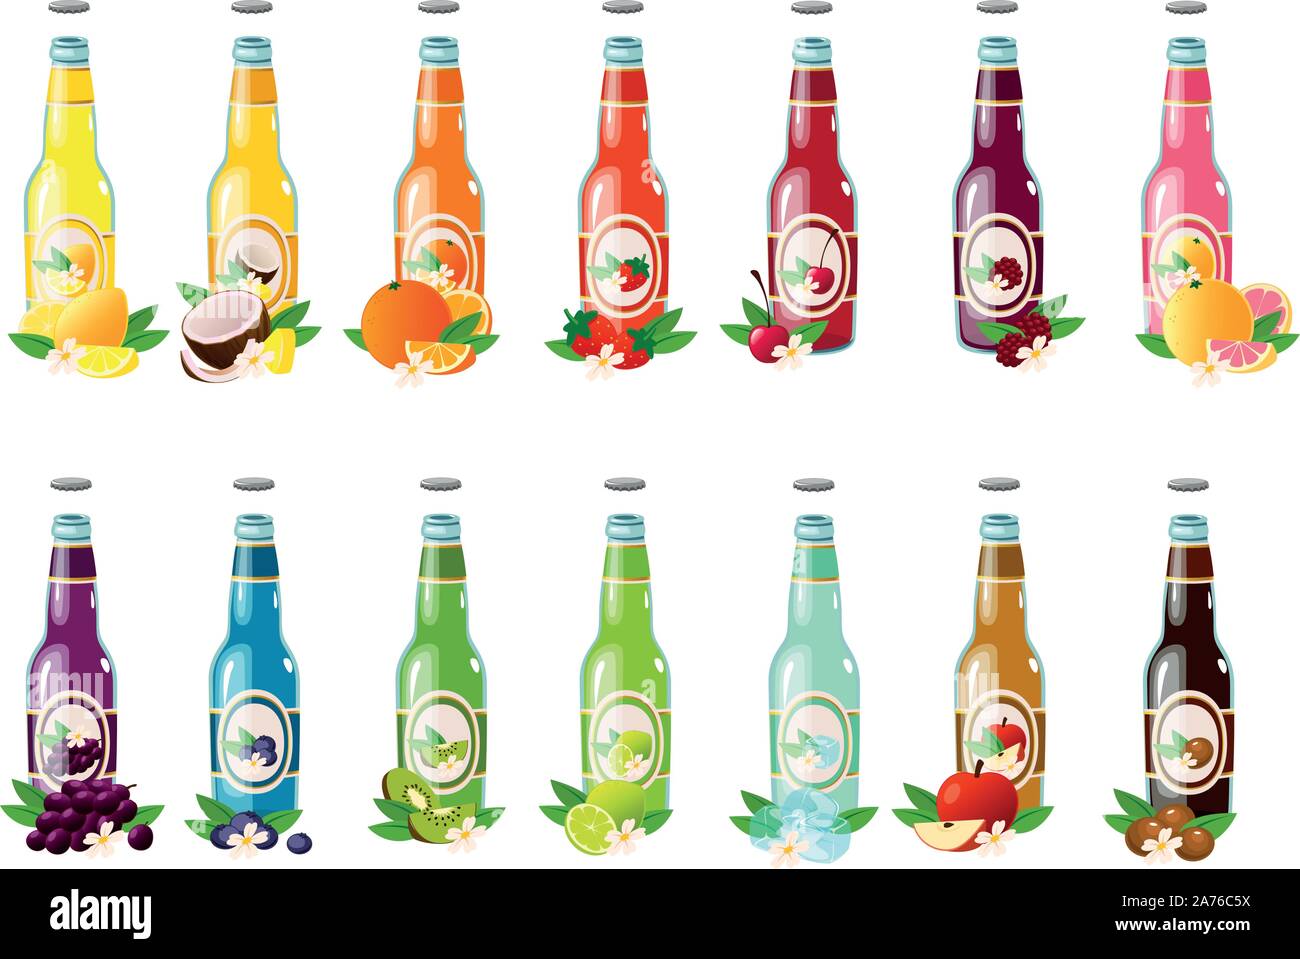 Illustrazione Vettoriale di soda varie bottiglie in vetro con diversi colori e sapori Illustrazione Vettoriale